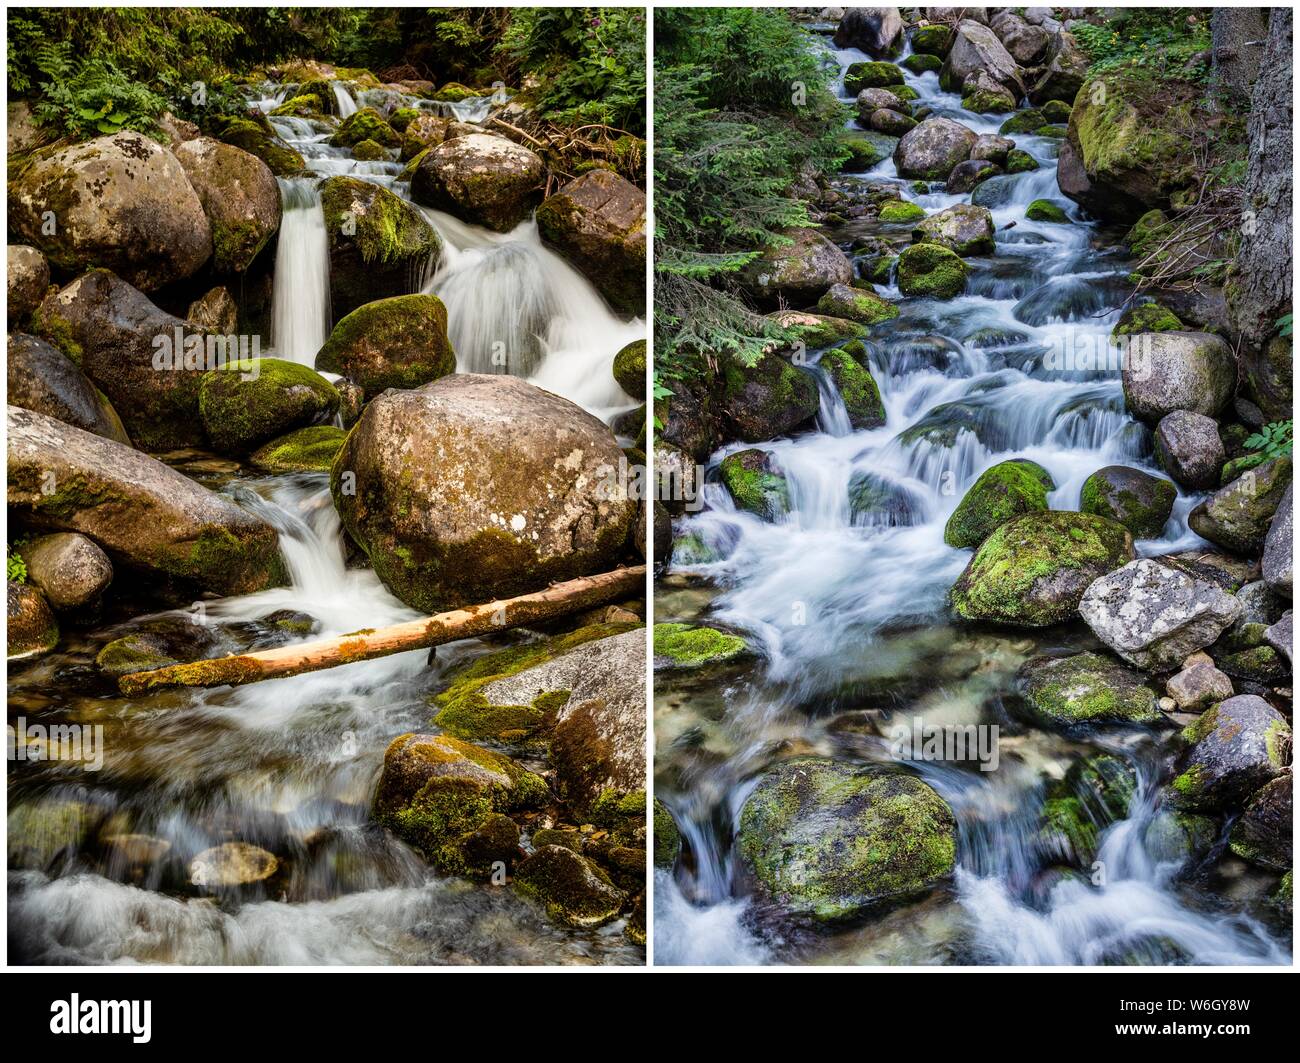 Bild von 2 Streams besteht in einem Bild kombiniert werden. Dies ist auf Rila Gebirge in Bulgarien gedreht, während auf Wanderung zu Mussala Gipfel.. Stockfoto